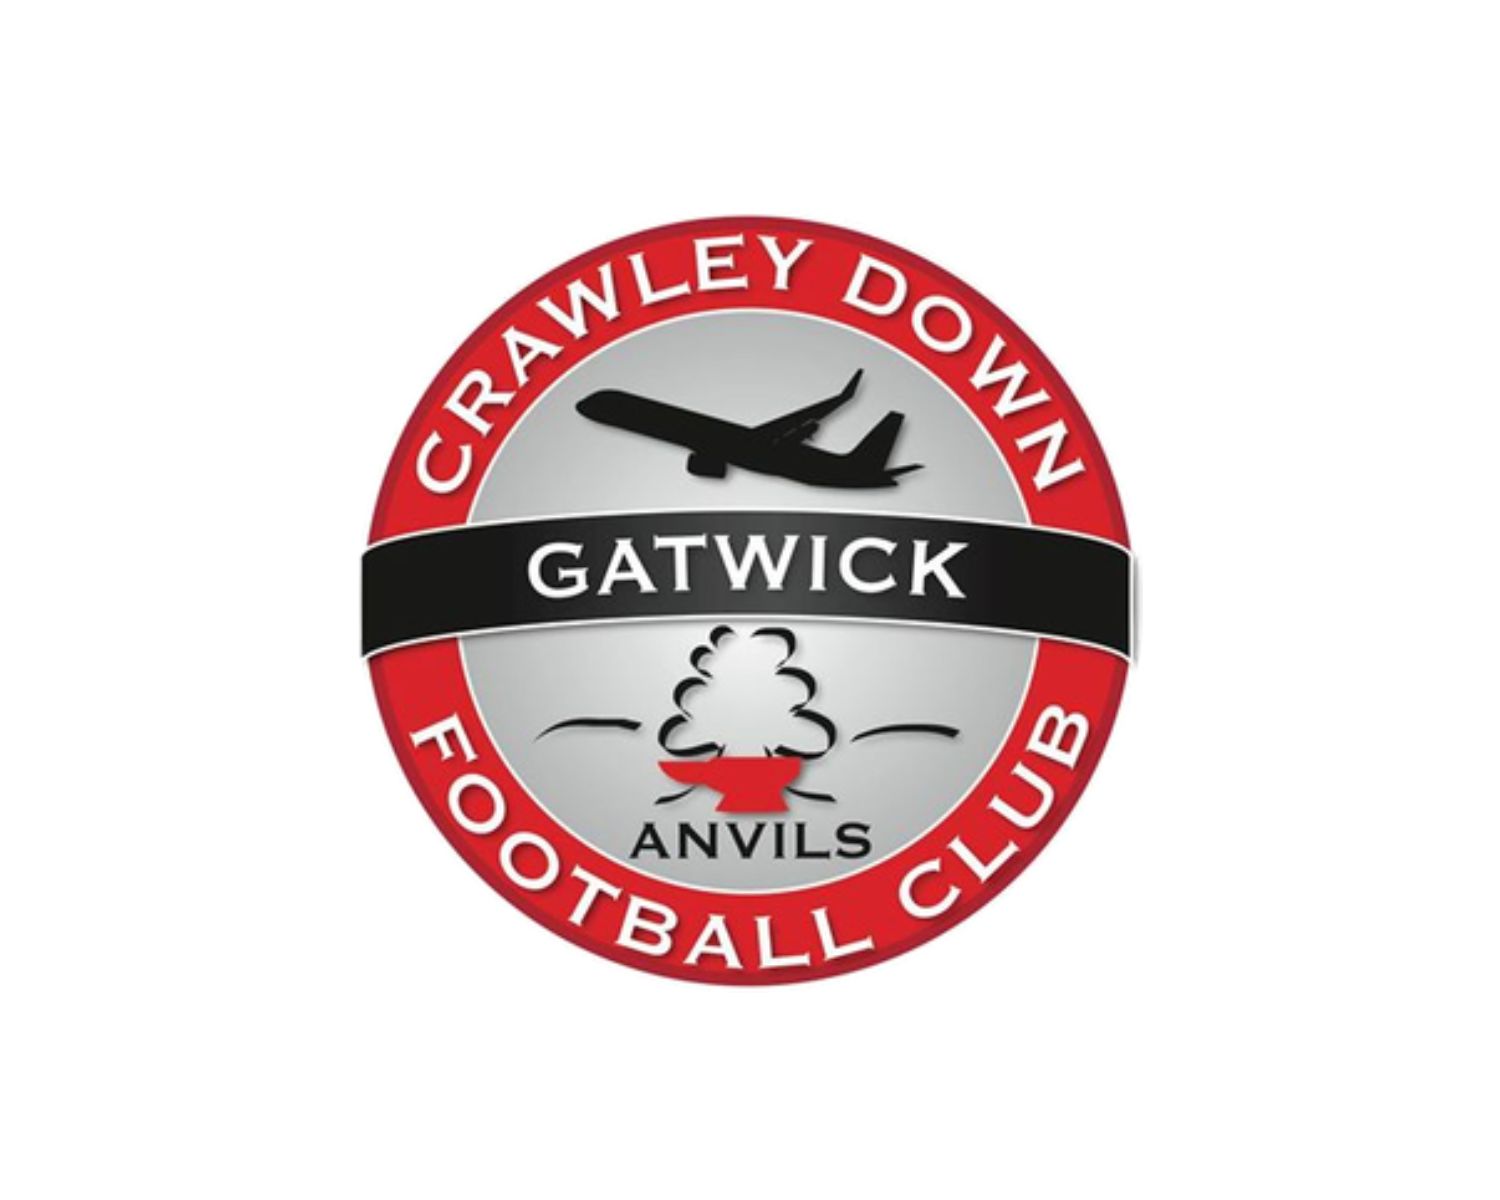 crawley-down-gatwick-fc-16-football-club-facts